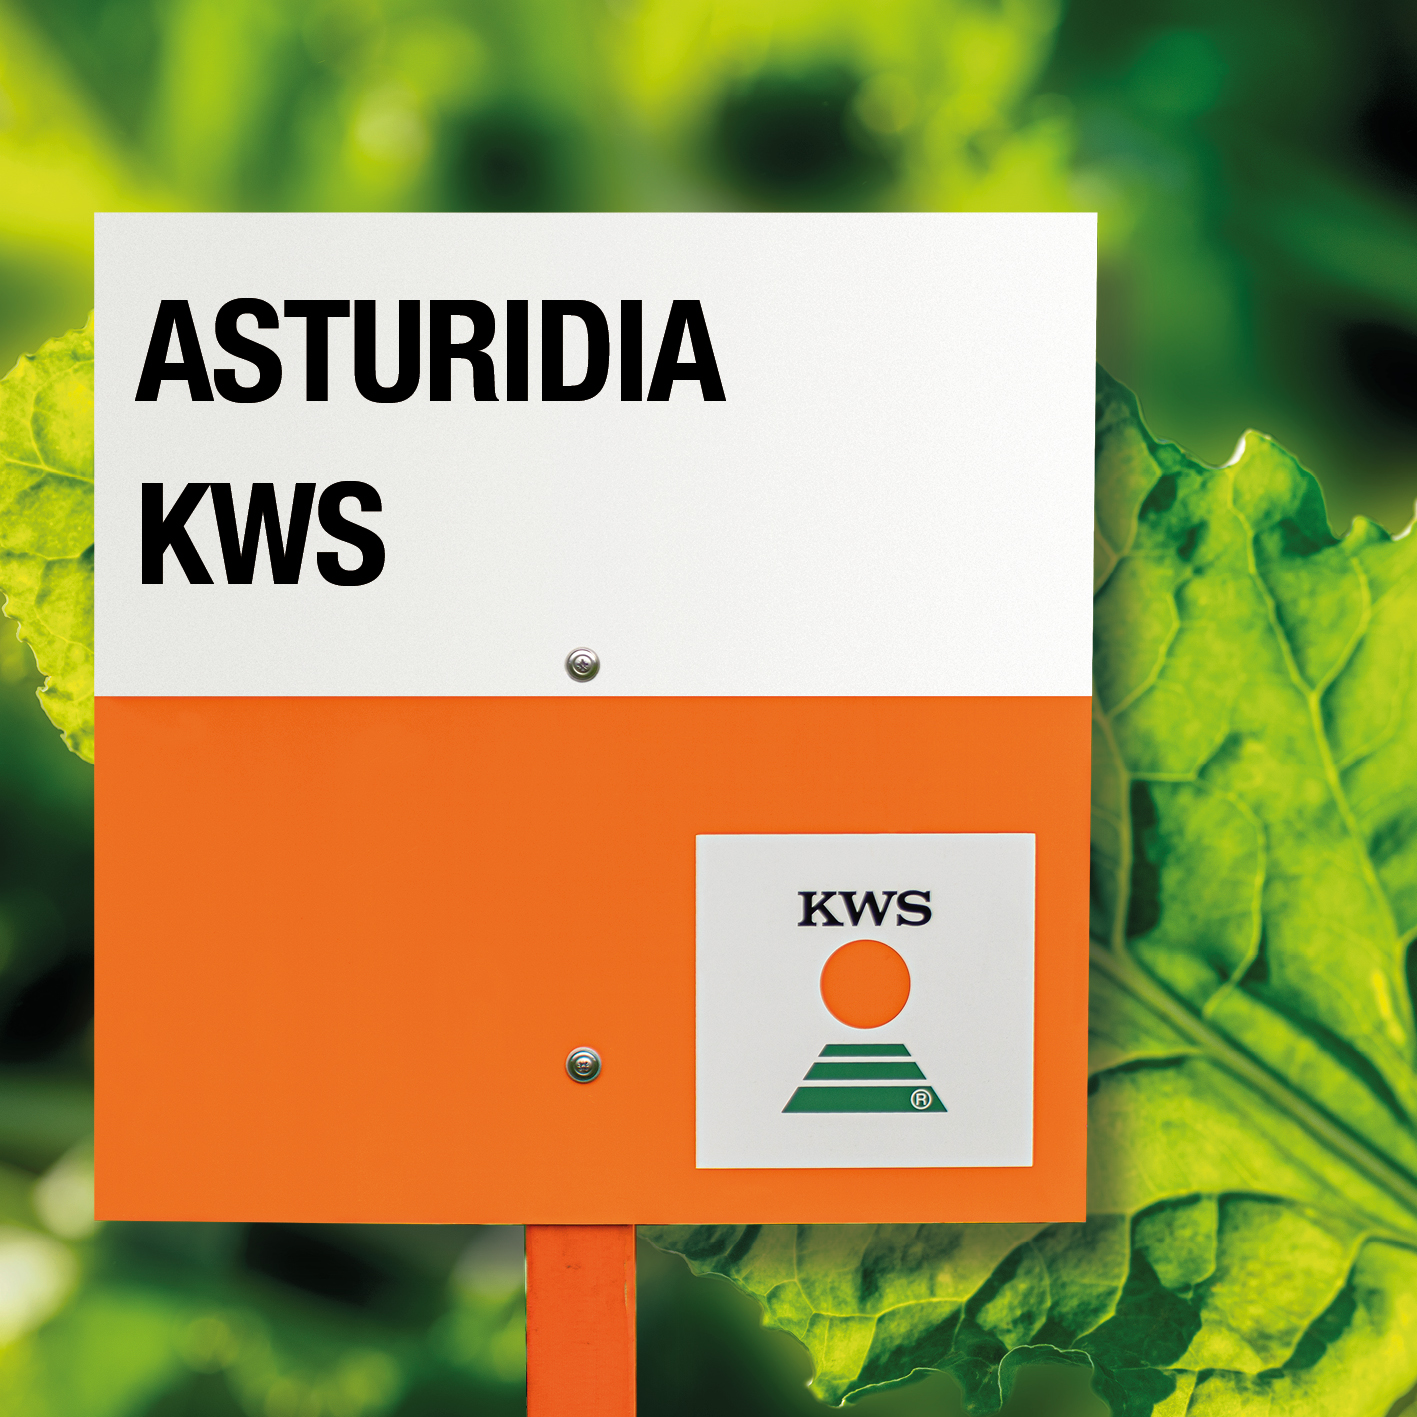 Asturidia_KWS.jpg